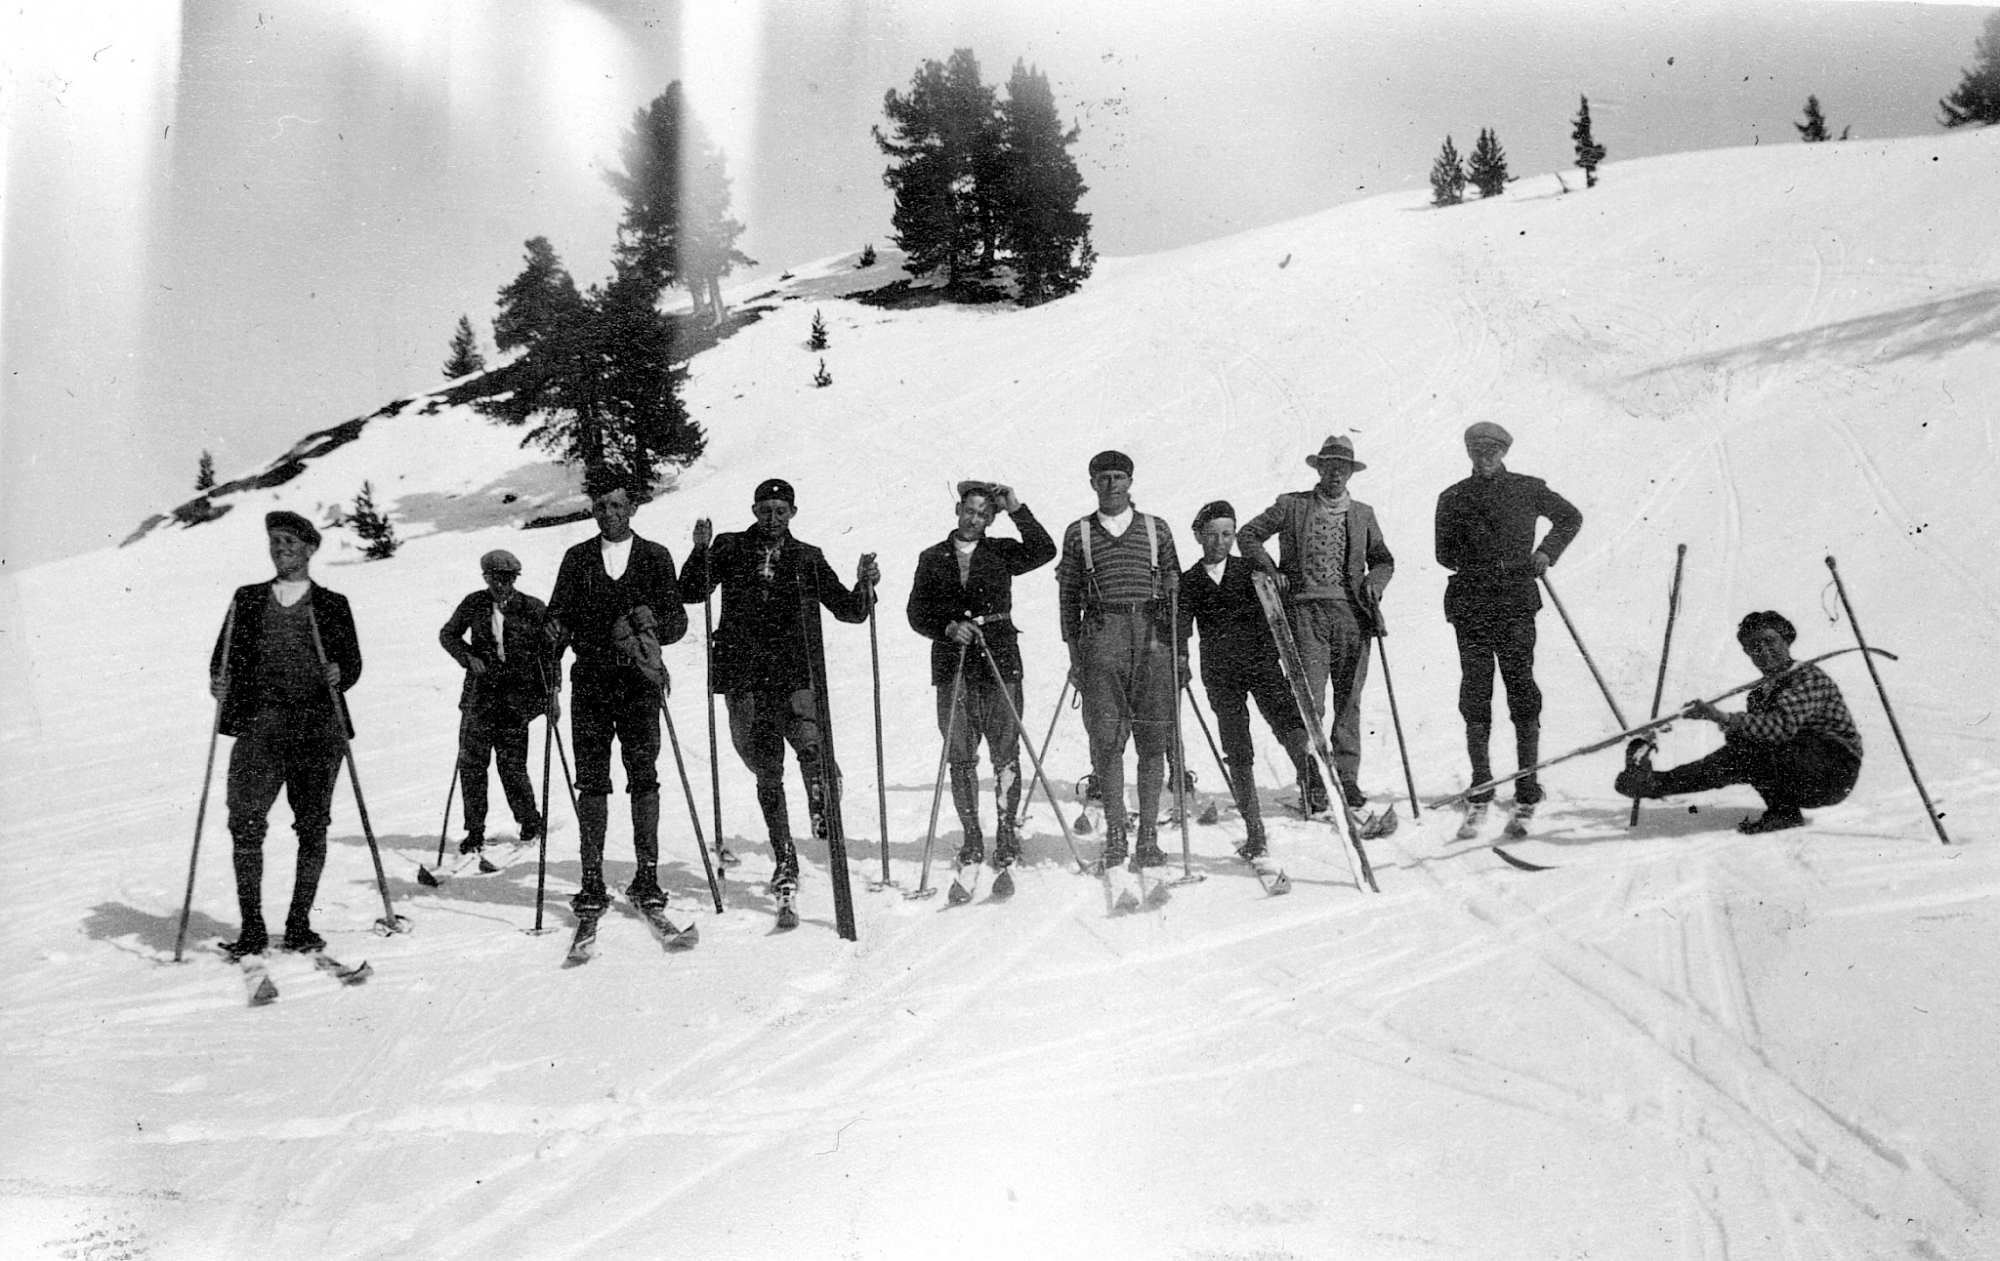 Sortie du ski-club Arpettaz de Nendaz à Tracouet, vers 1930-1935.